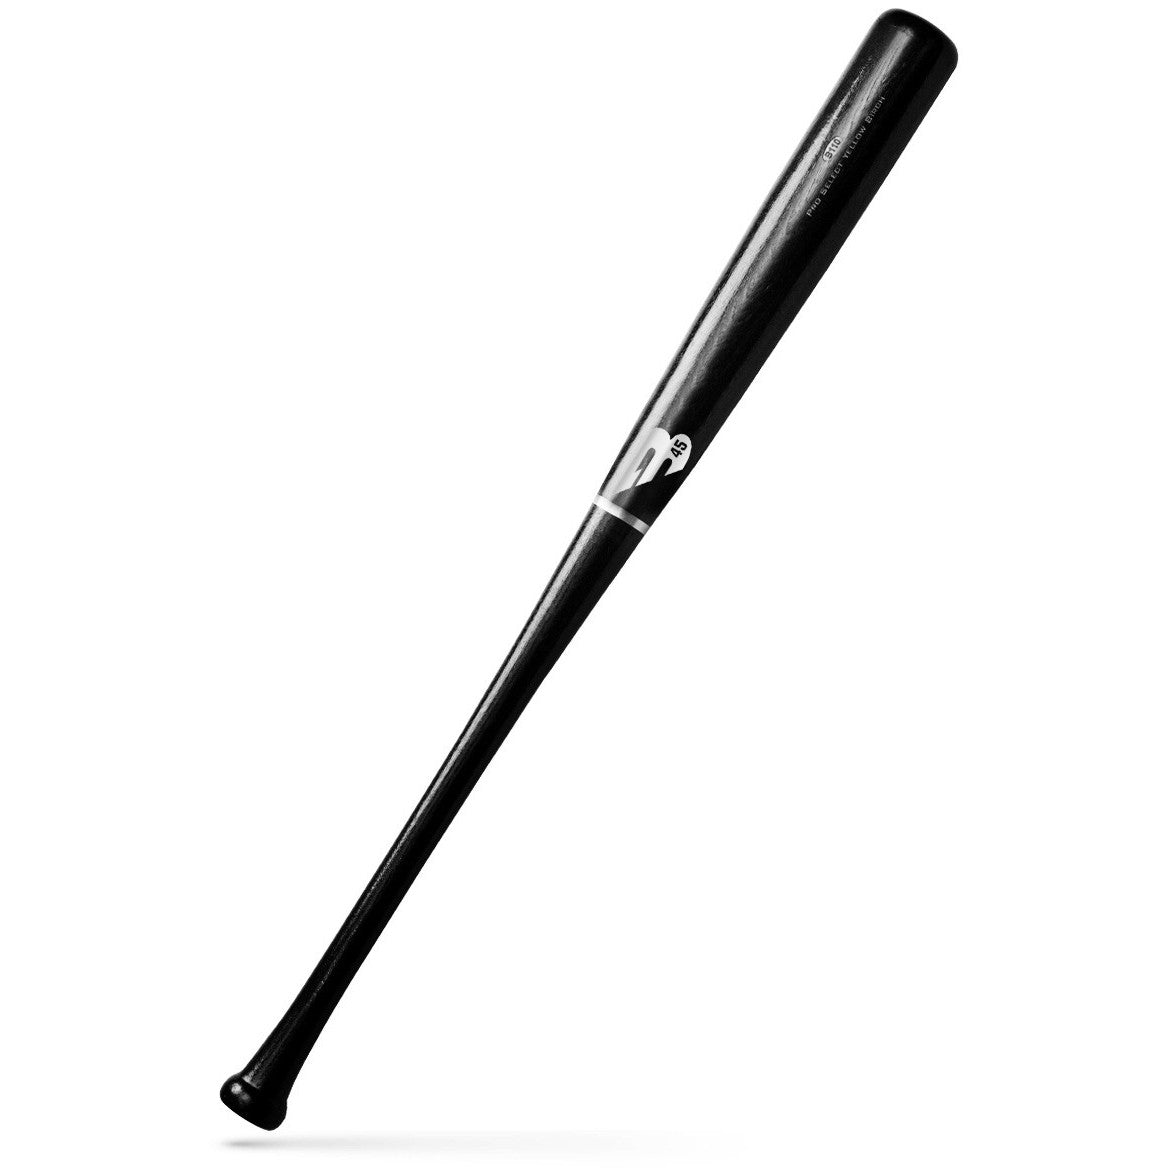 B45 Pro Select Stock B110 Birch Baseball Bat